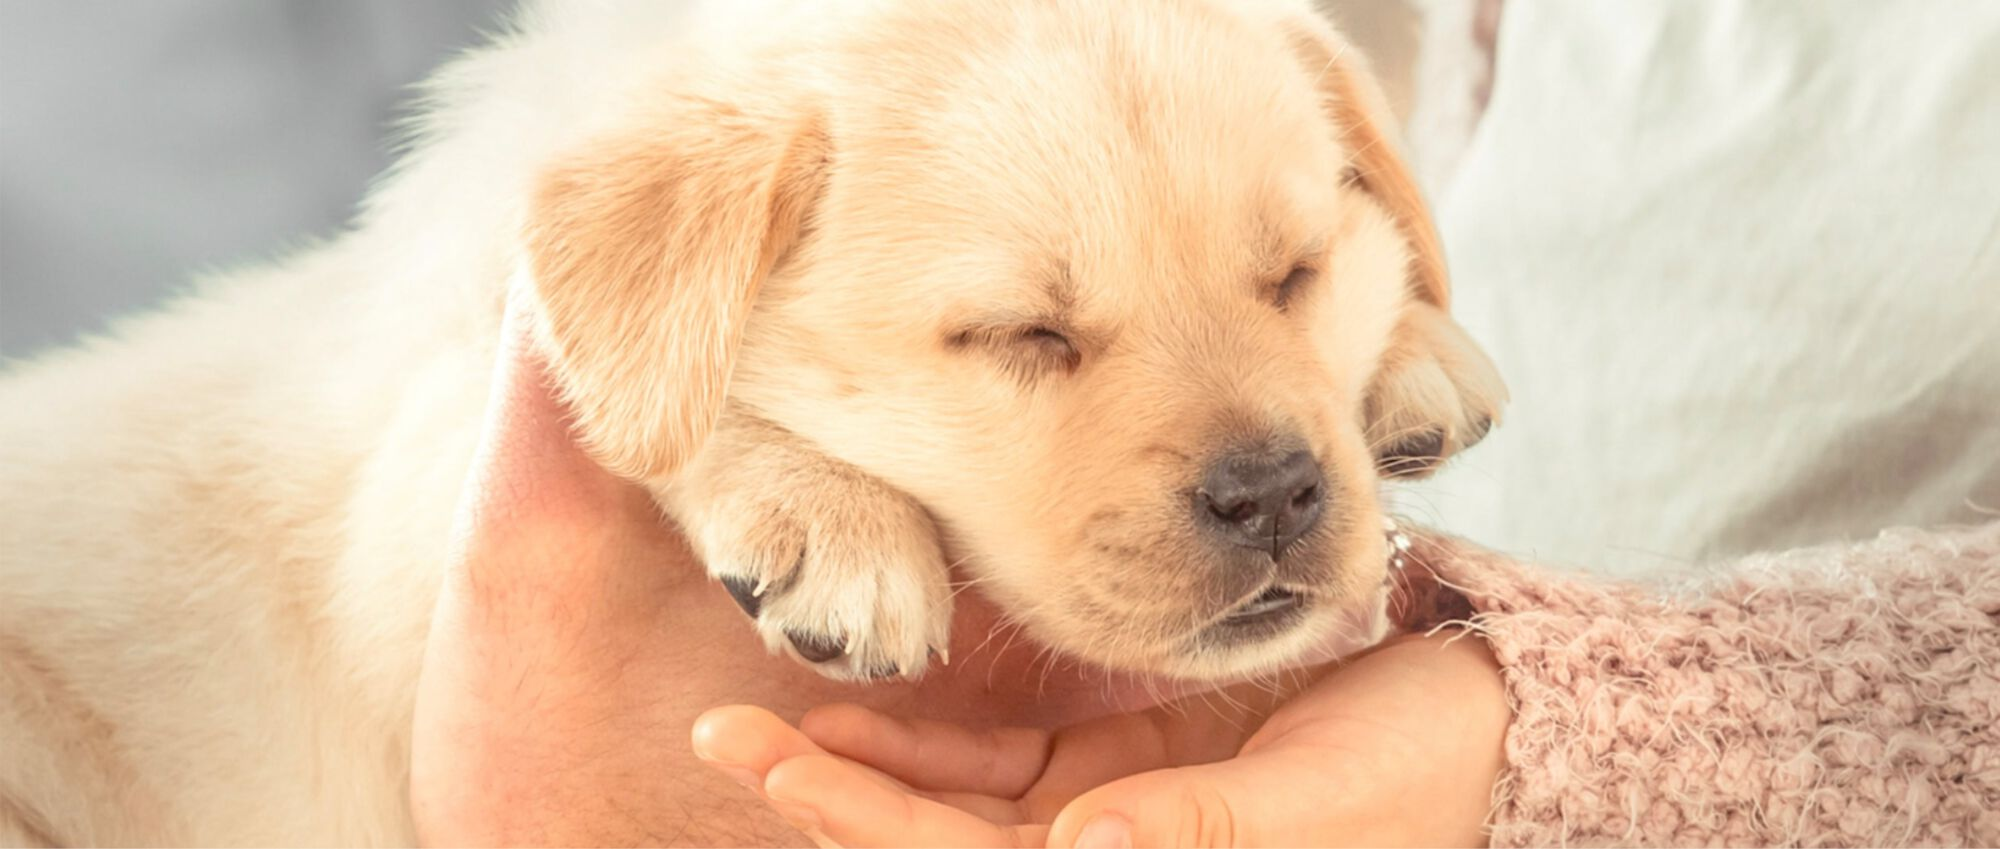 Labrador puppy in de armen van zijn eigenaar